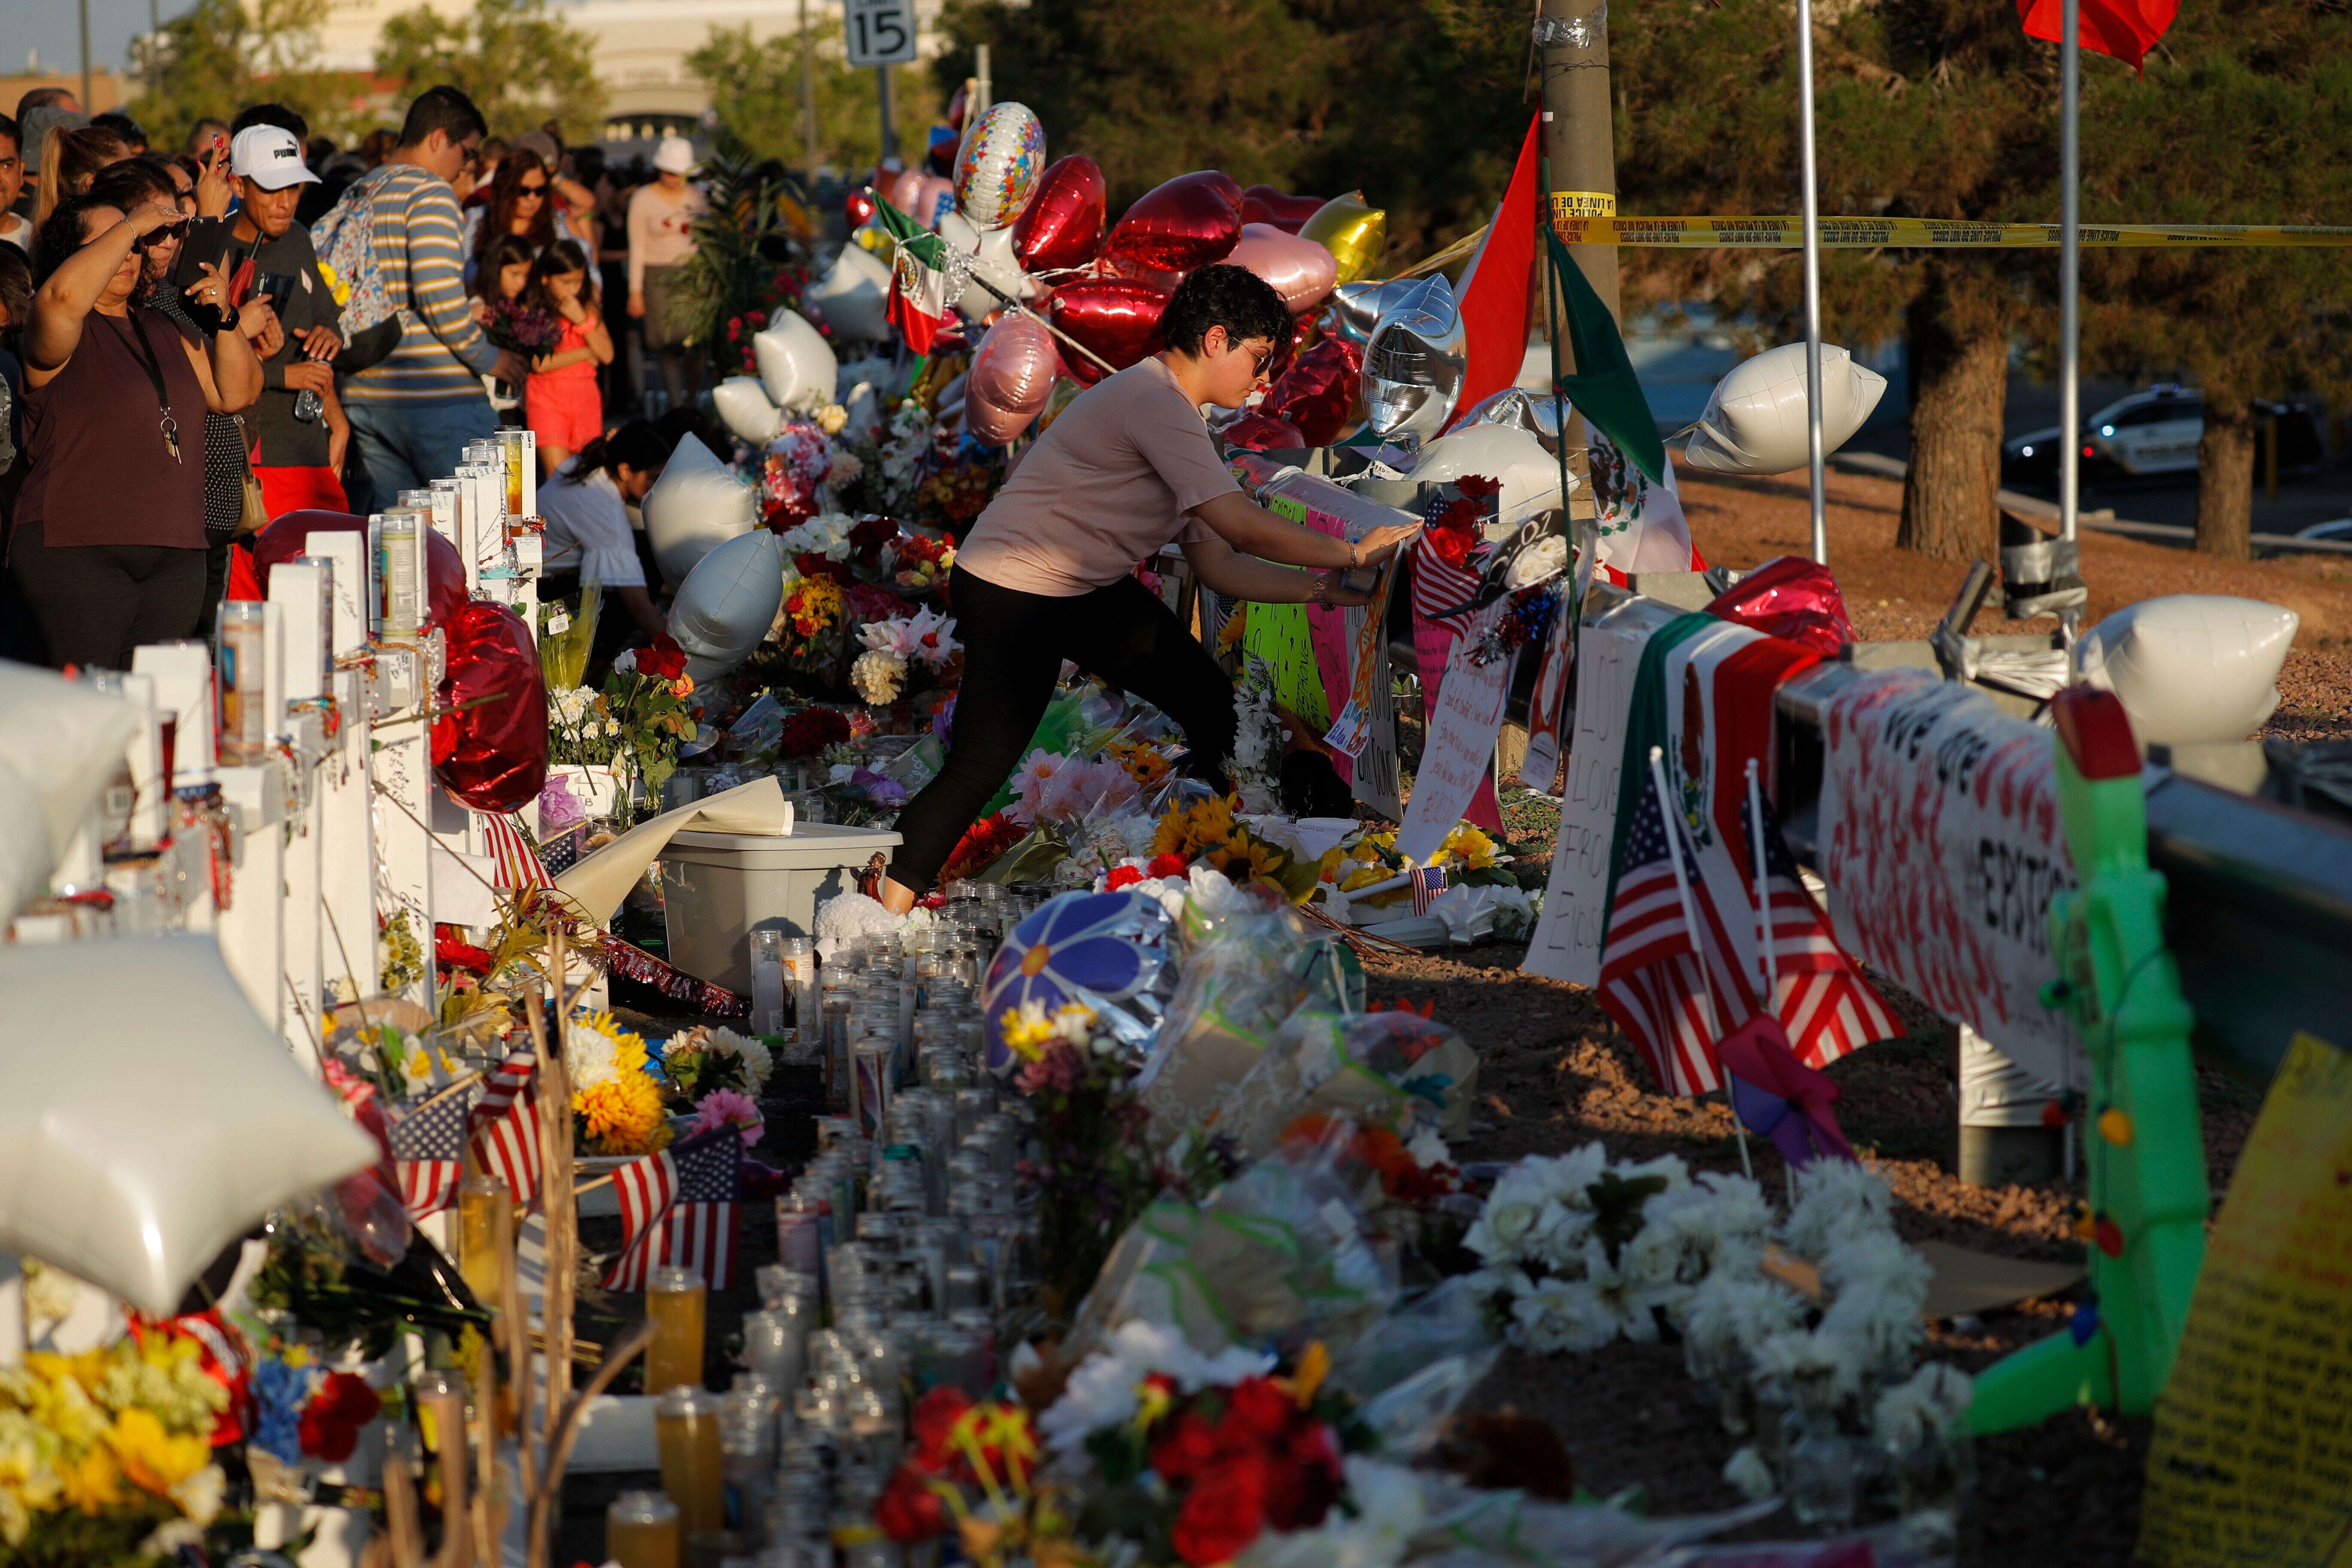 22 personnes sont mortes dans la fusillade d'El Paso au Texas, dont 8 Mexicains et une majorité d’Américains d’origine hispaniques.